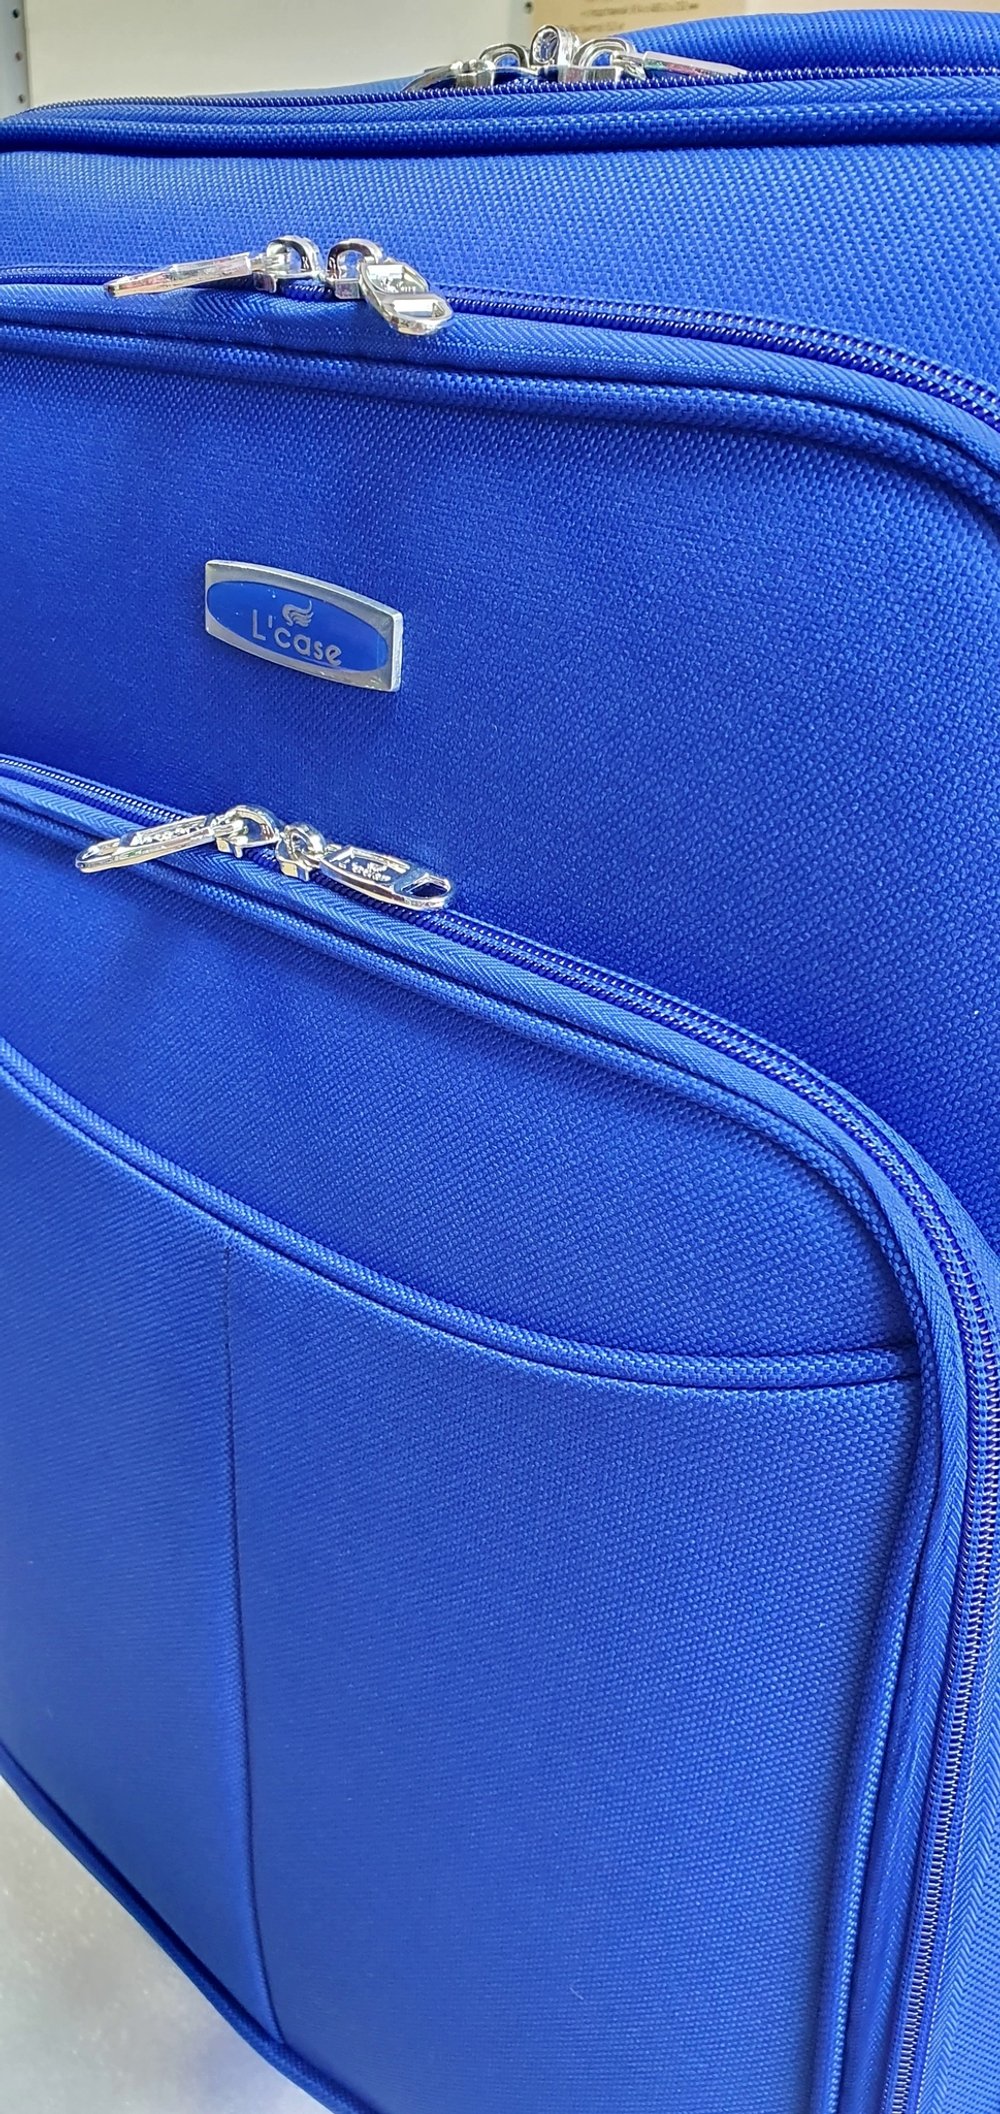 Чемодан тканевый Lcase Amsterdam размера L. Дорожный чемодан с расширением, 75 см, 96 л, Синий